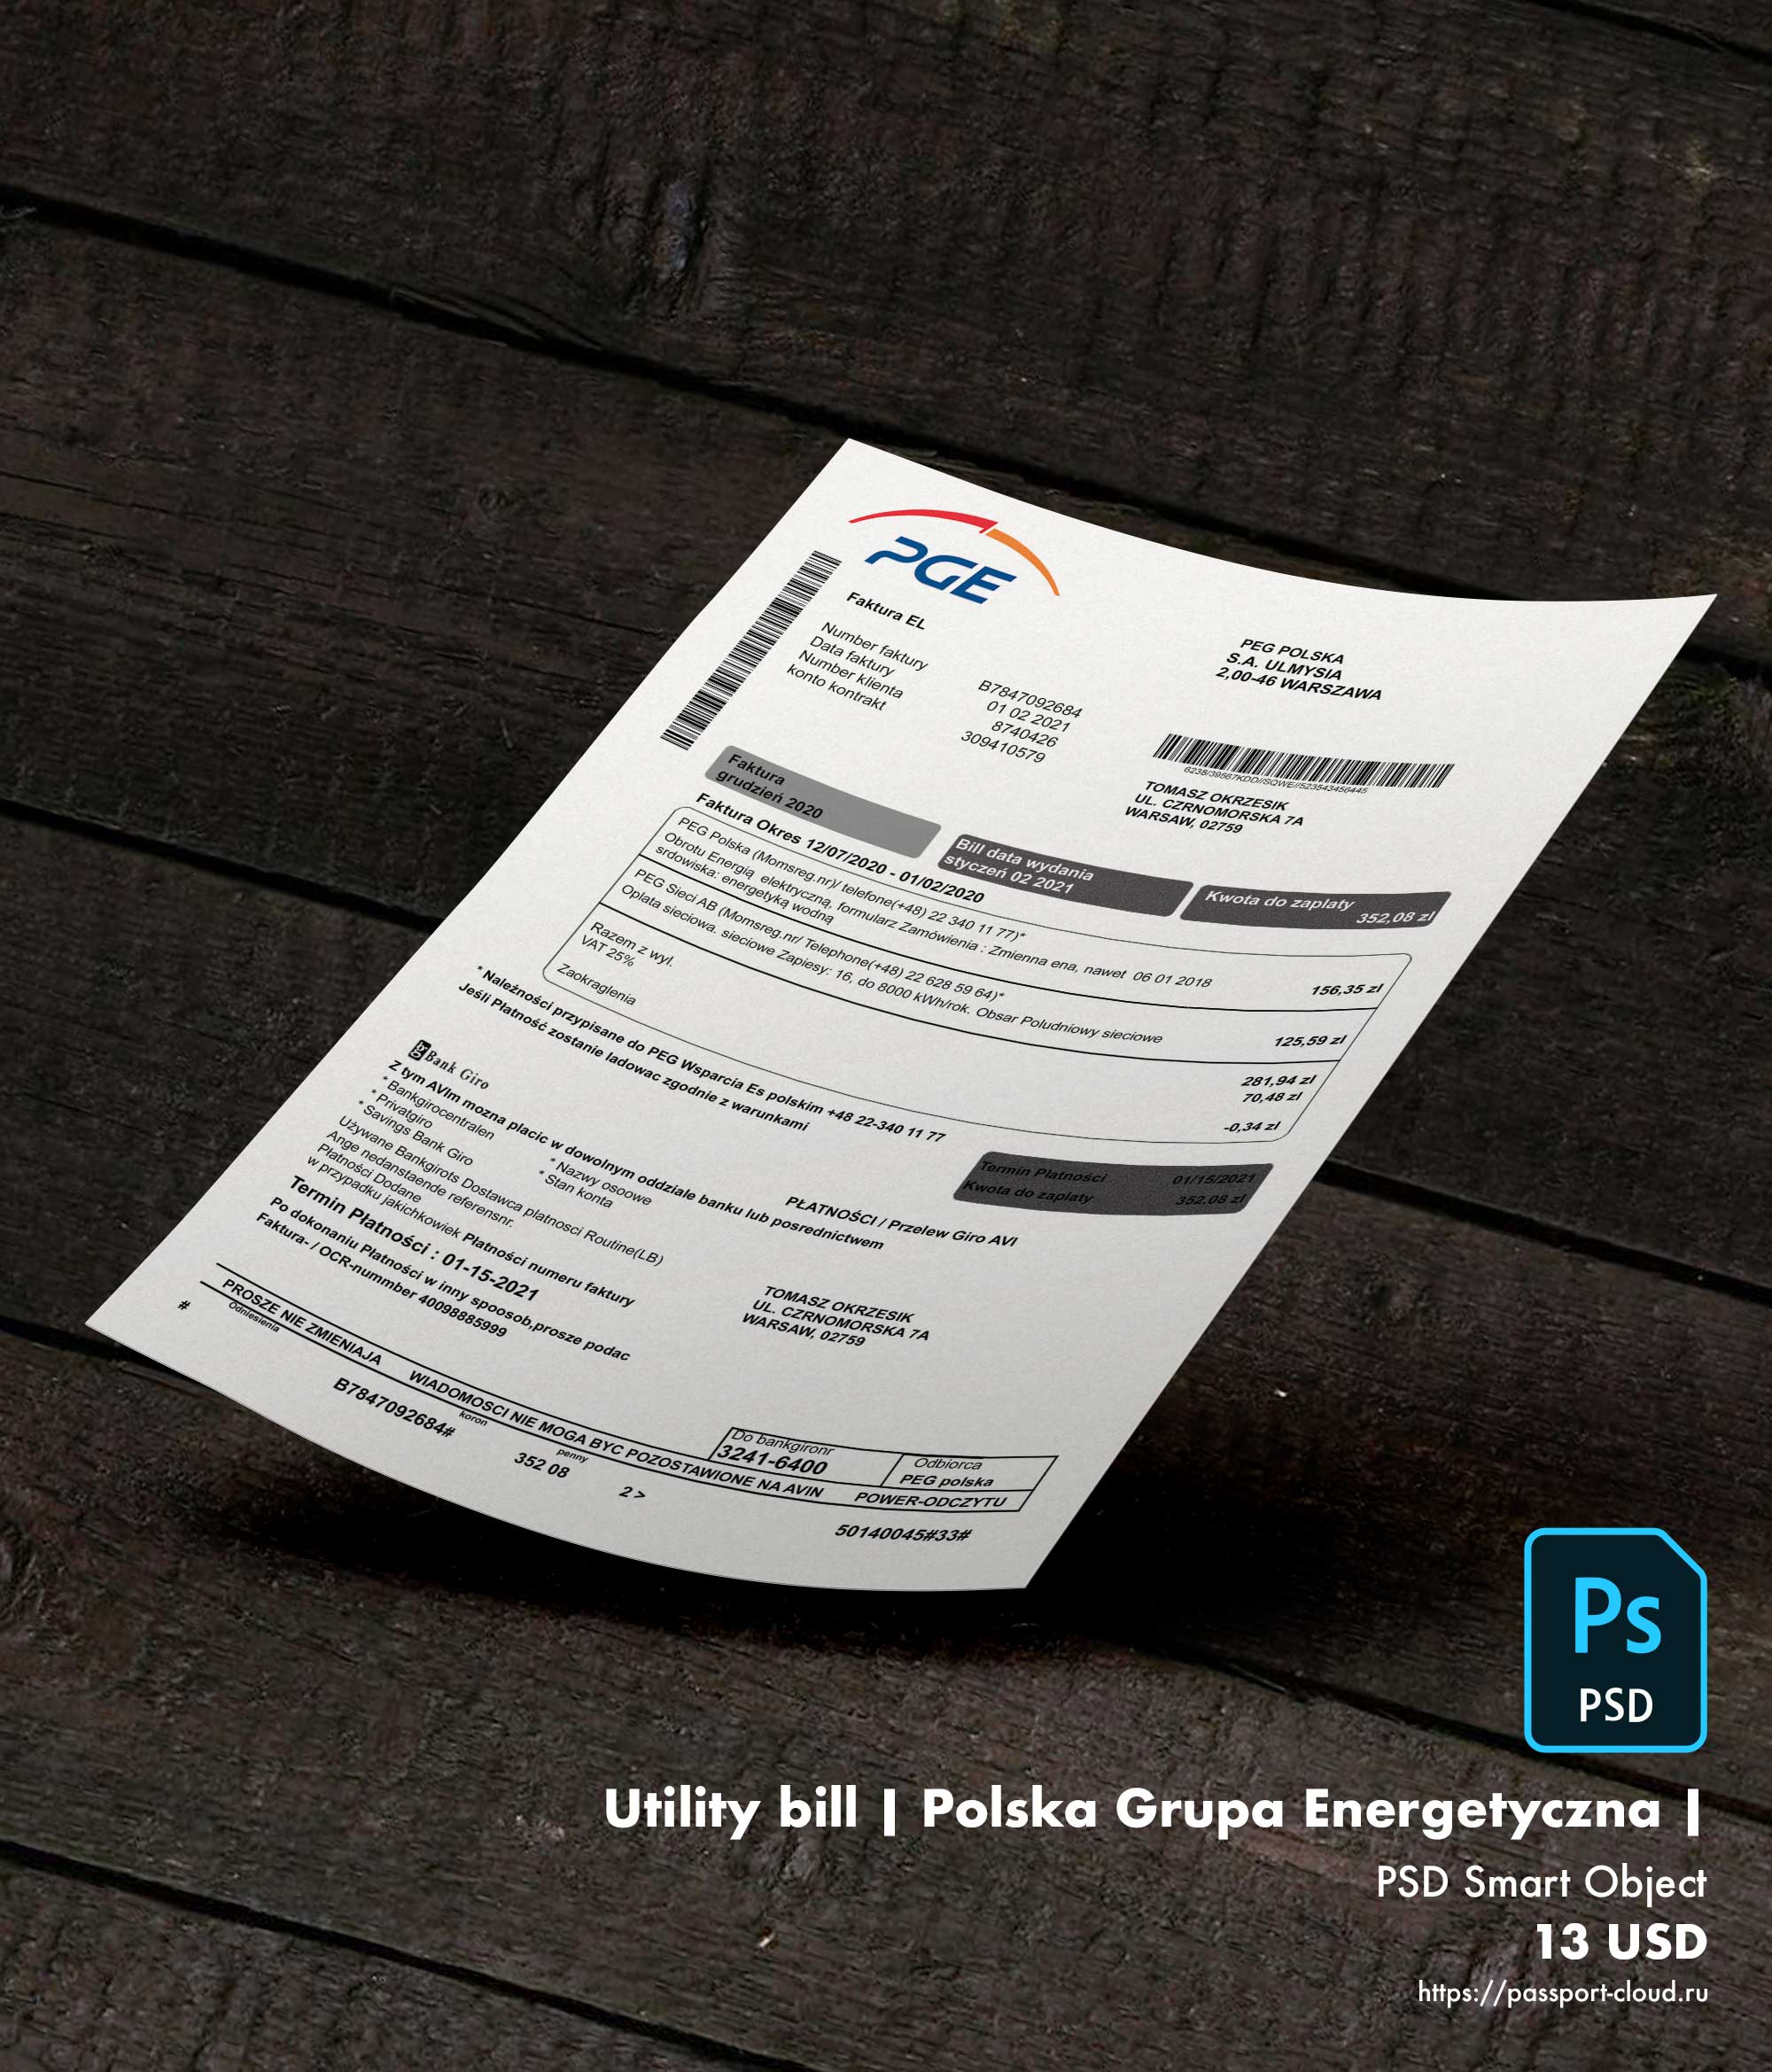 Utility bill | Polska Grupa Energetyczna | Poland |1